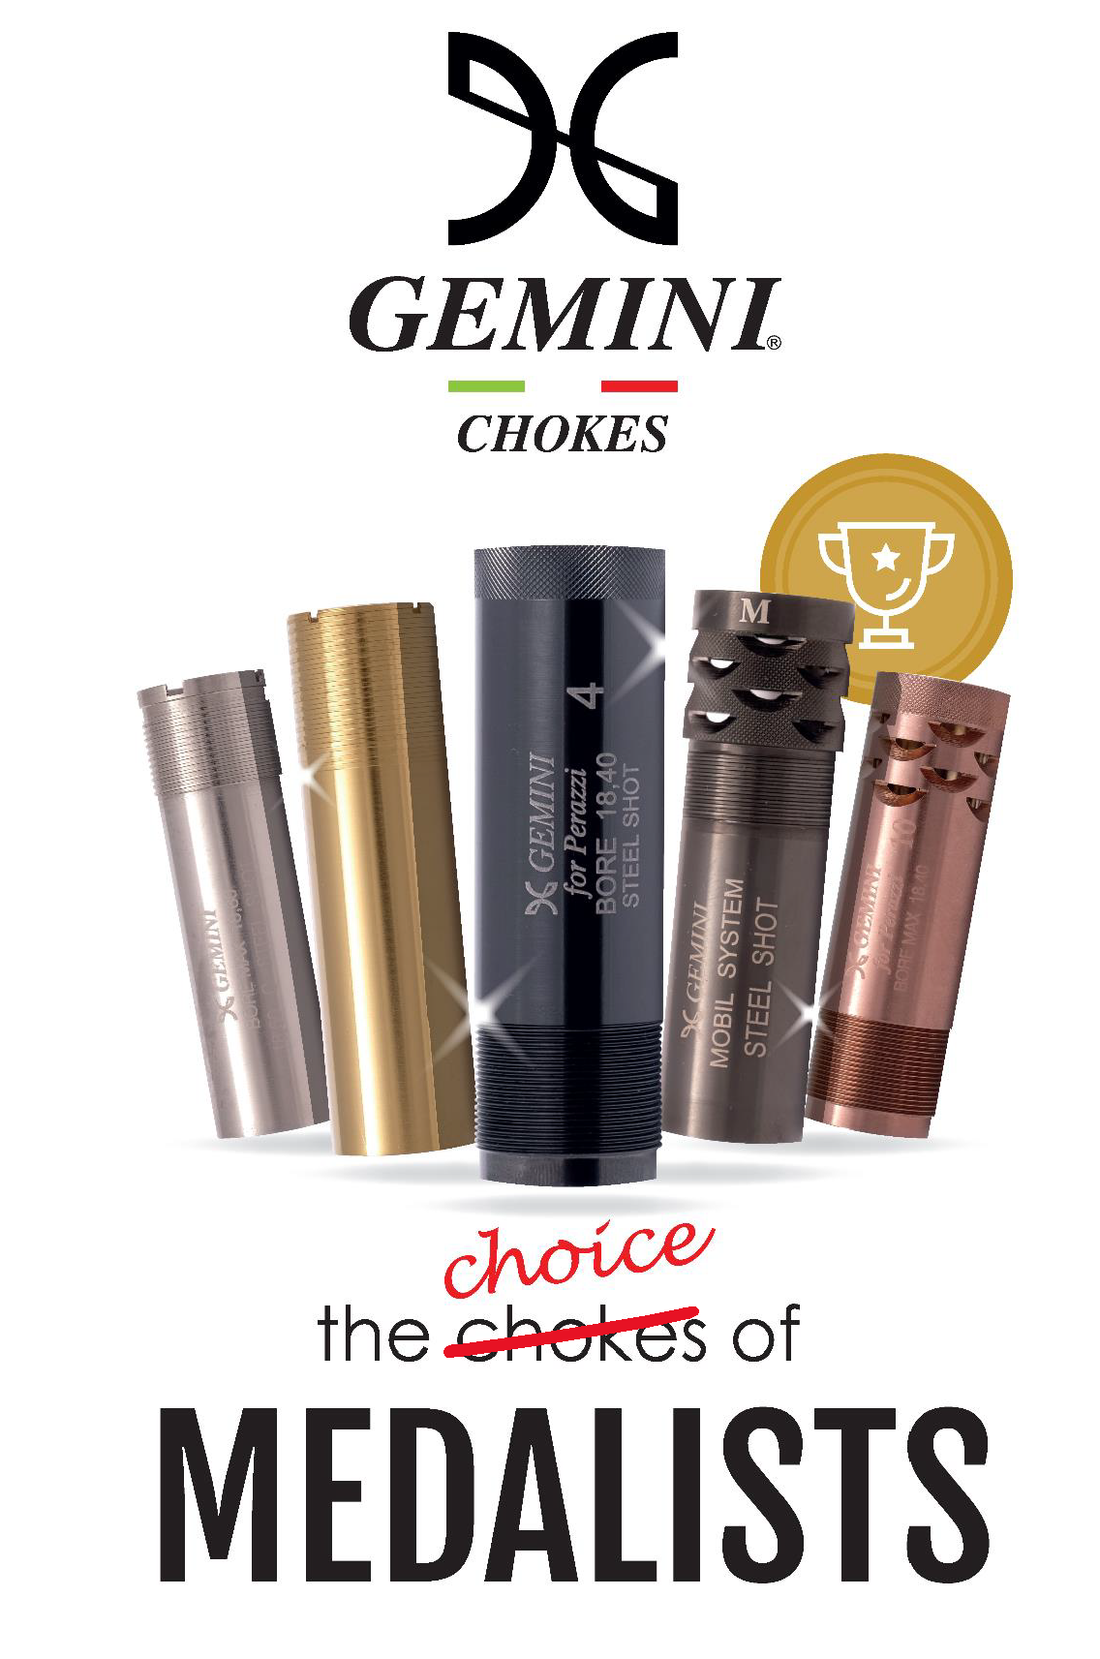  Gemini Chokes